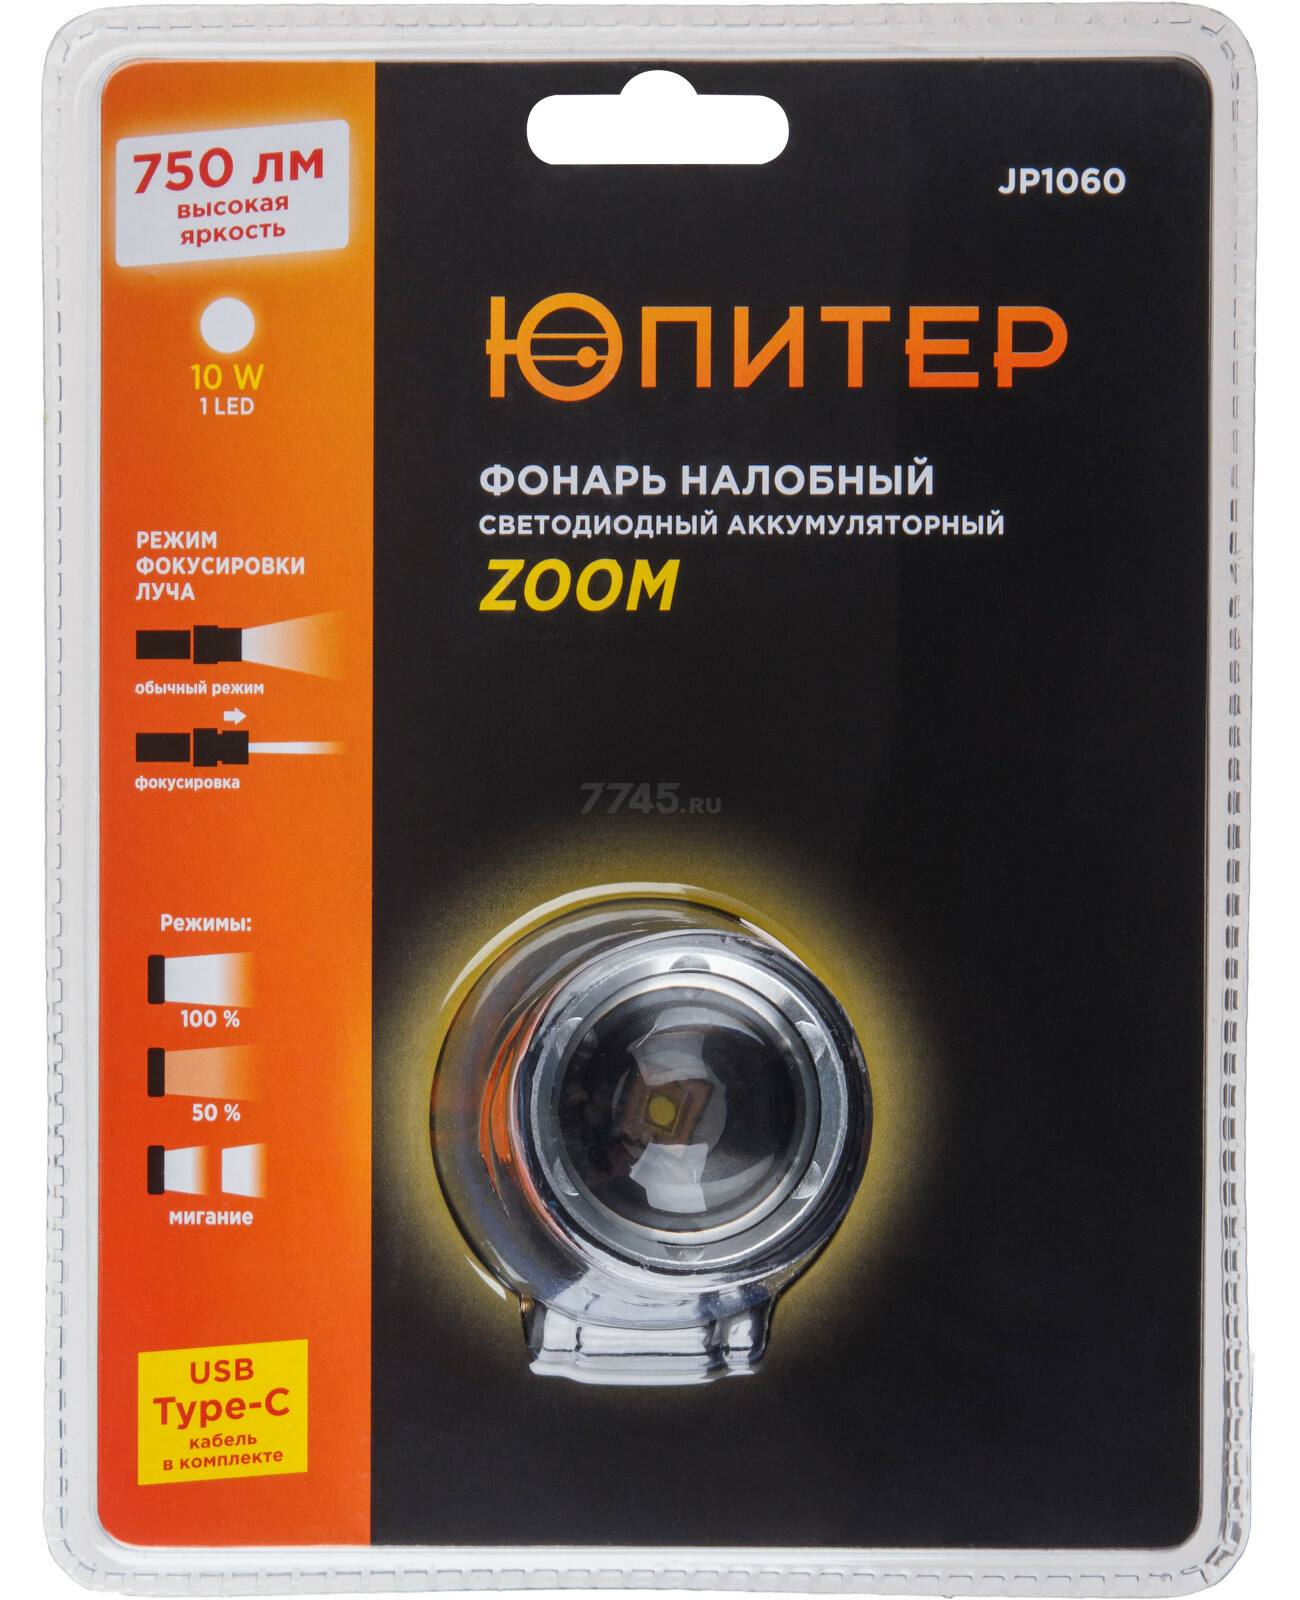 Фонарь налобный светодиодный аккумуляторный 10Вт ЮПИТЕР Zoom (JP1060) - Фото 11